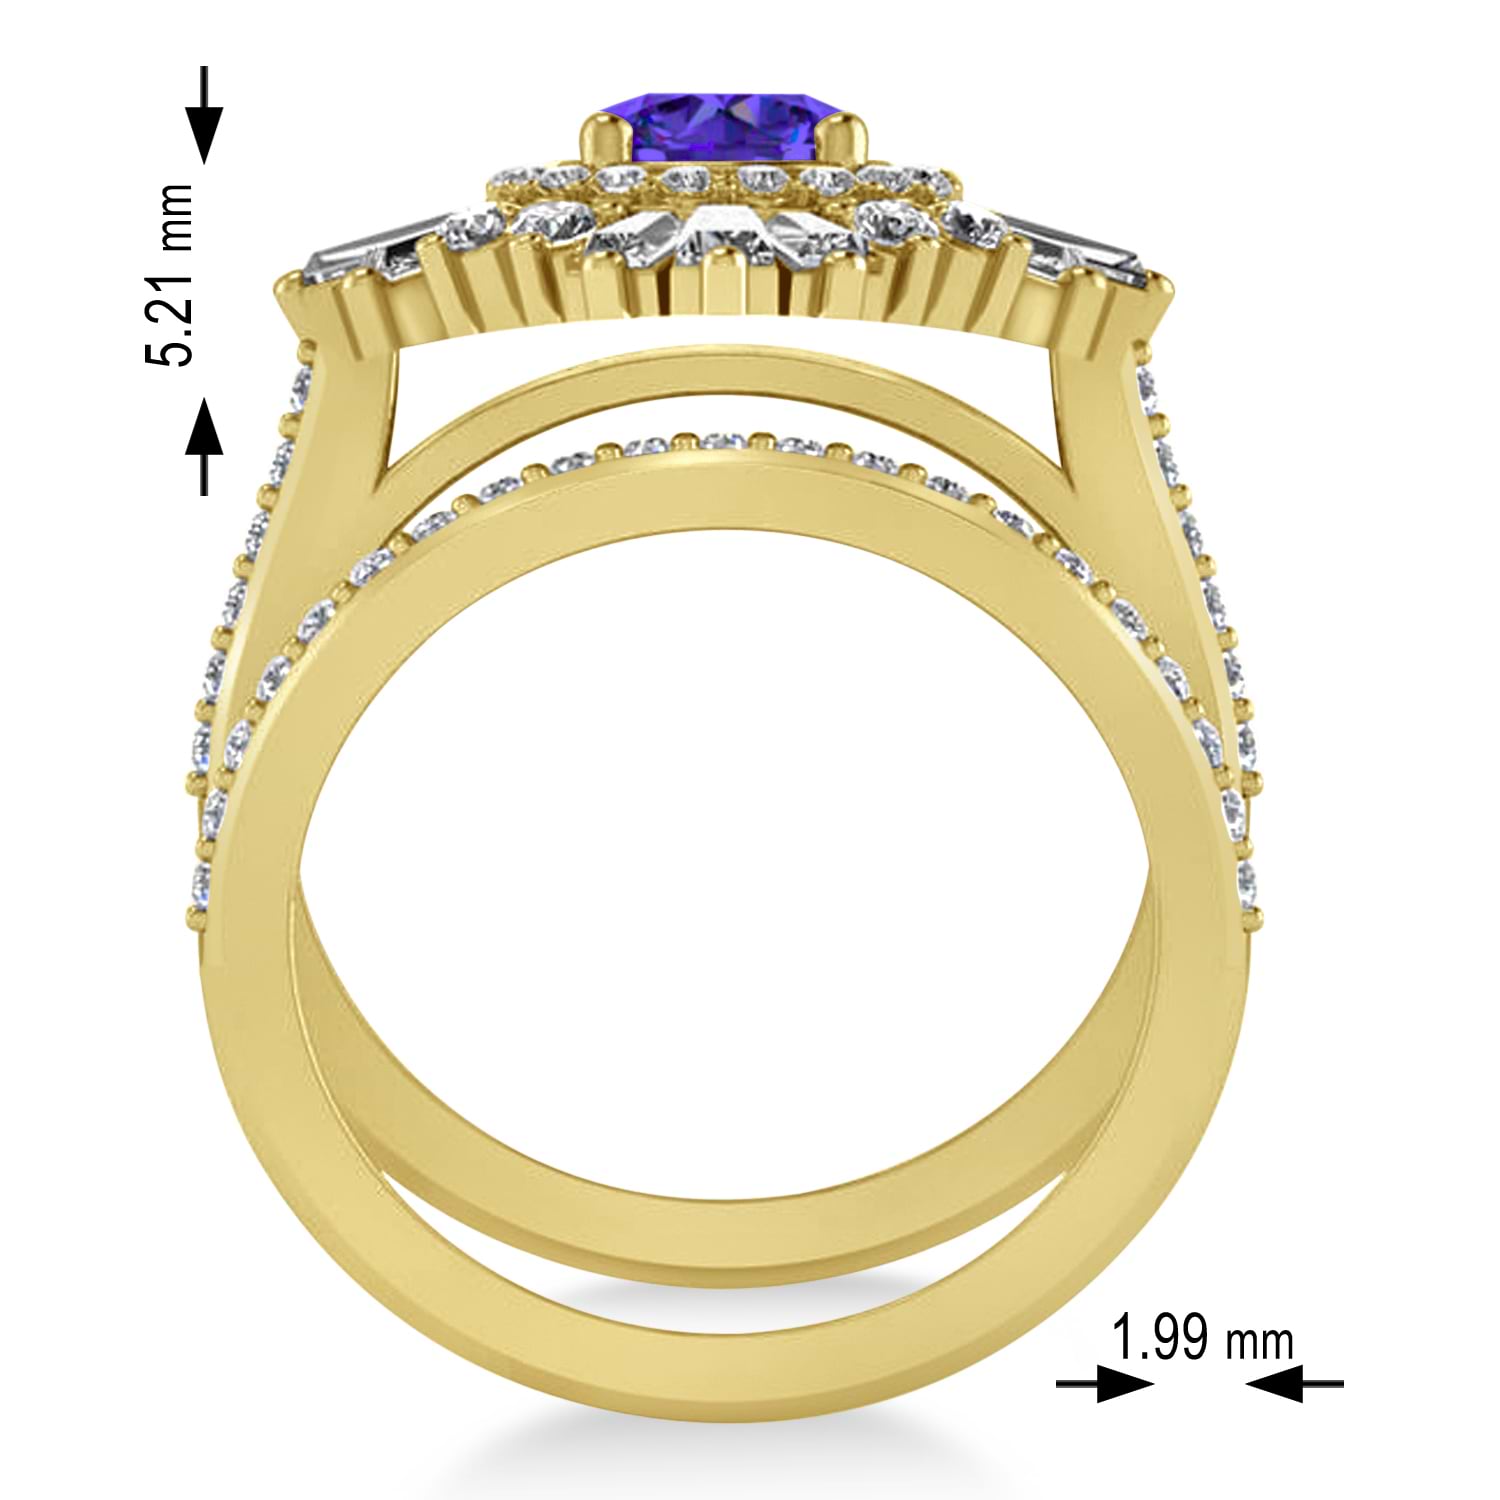 Tanzanite & Diamond Ballerina Engagement Ring 18k Yellow Gold (2.74 ctw)